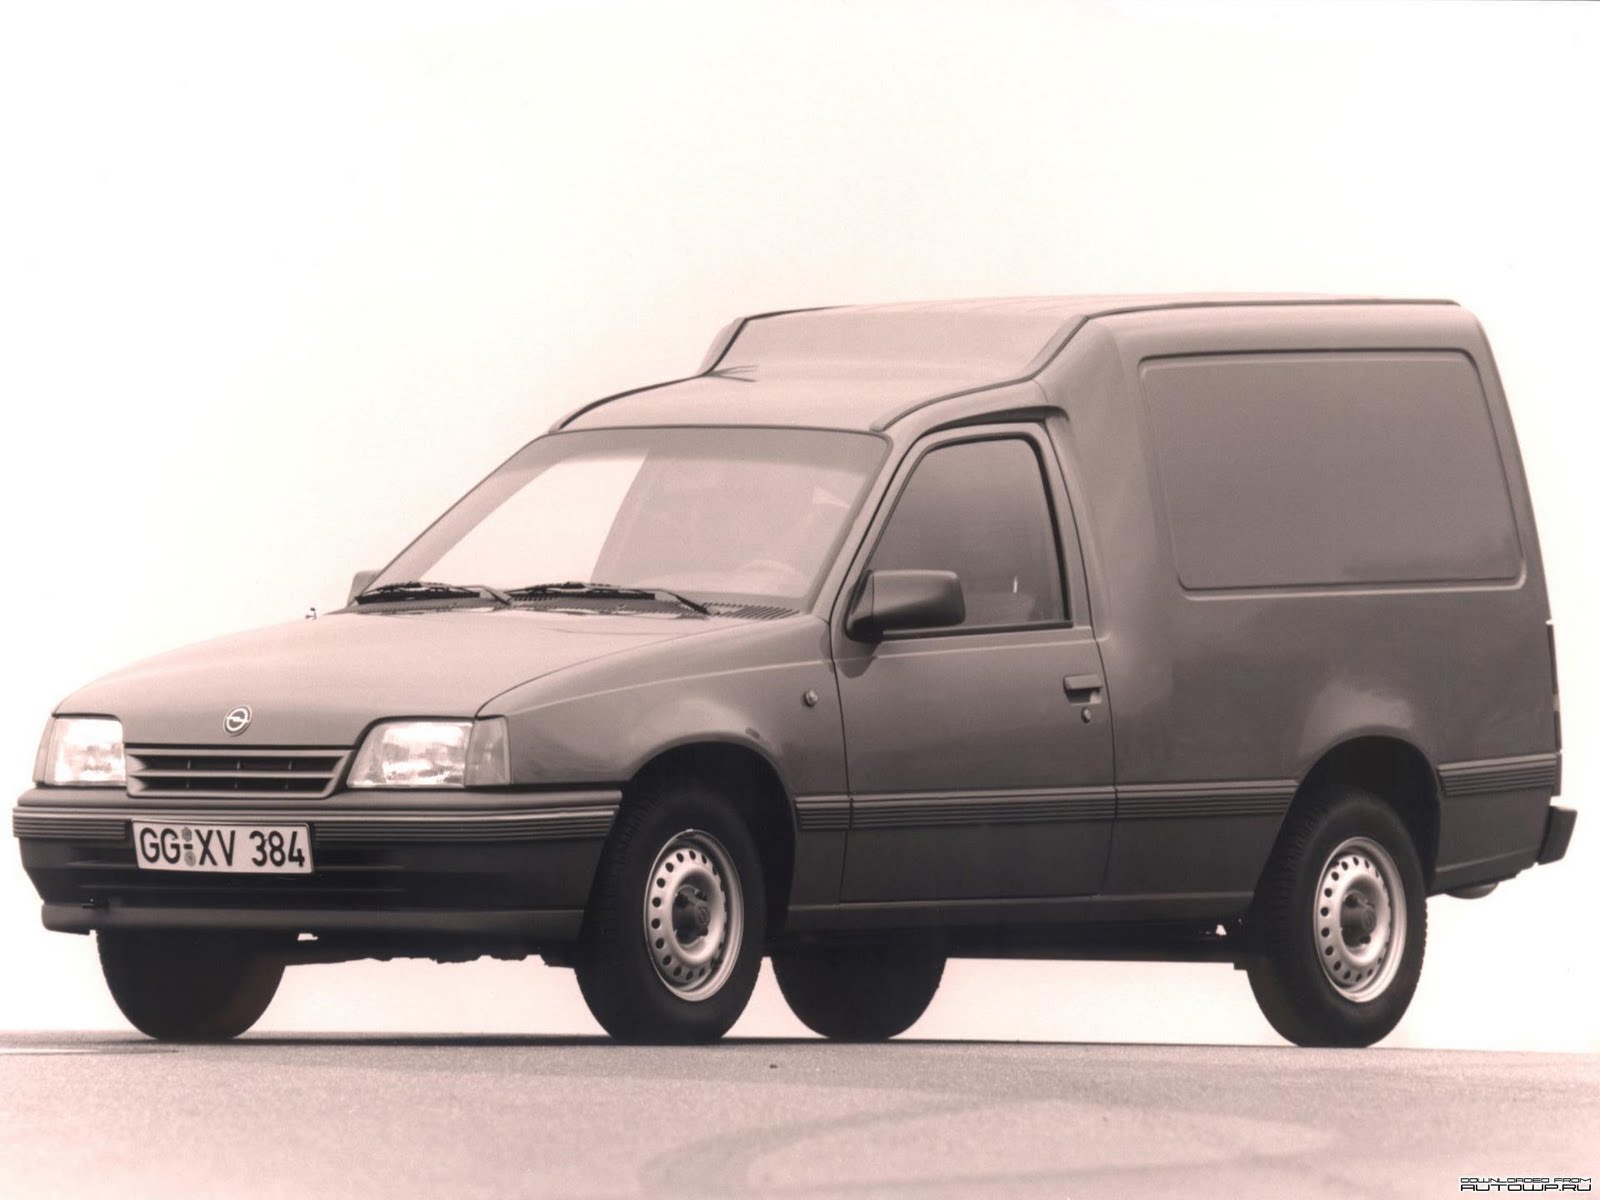 El Opel Kadett Combo, fue convertido a un Opel Kadett Combo GSI avec des options